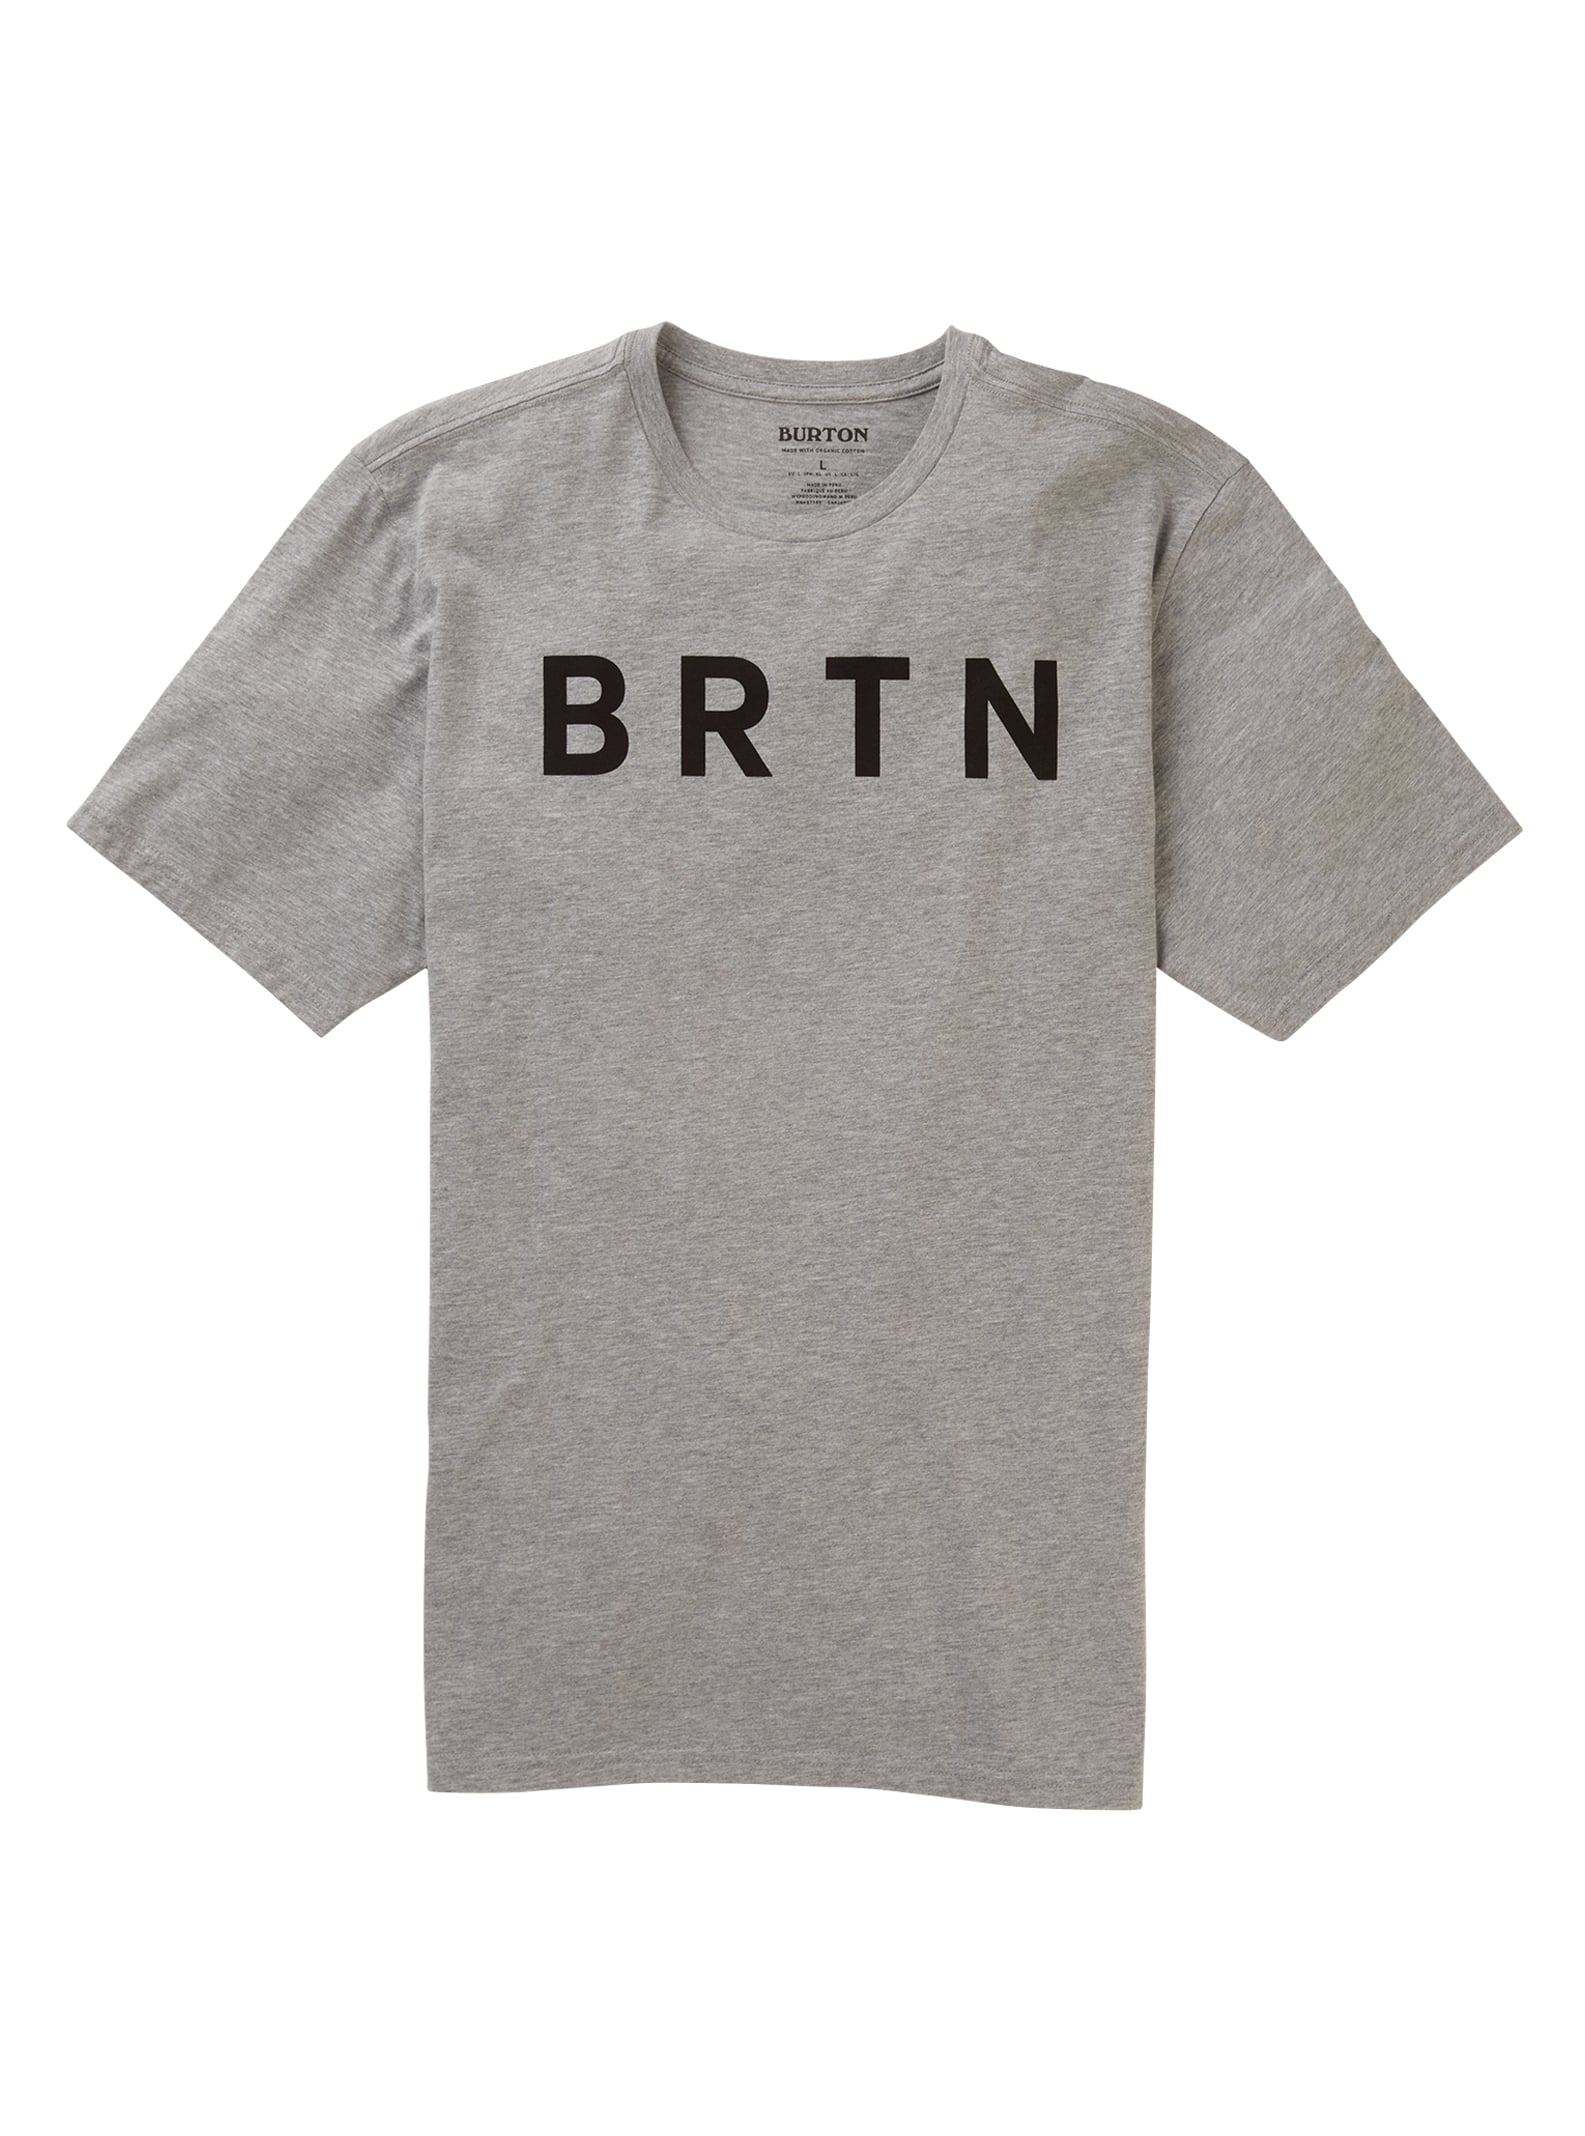 Burton BRTN Short Sleeve T-Shirt | Burton.com Winter 2020 US